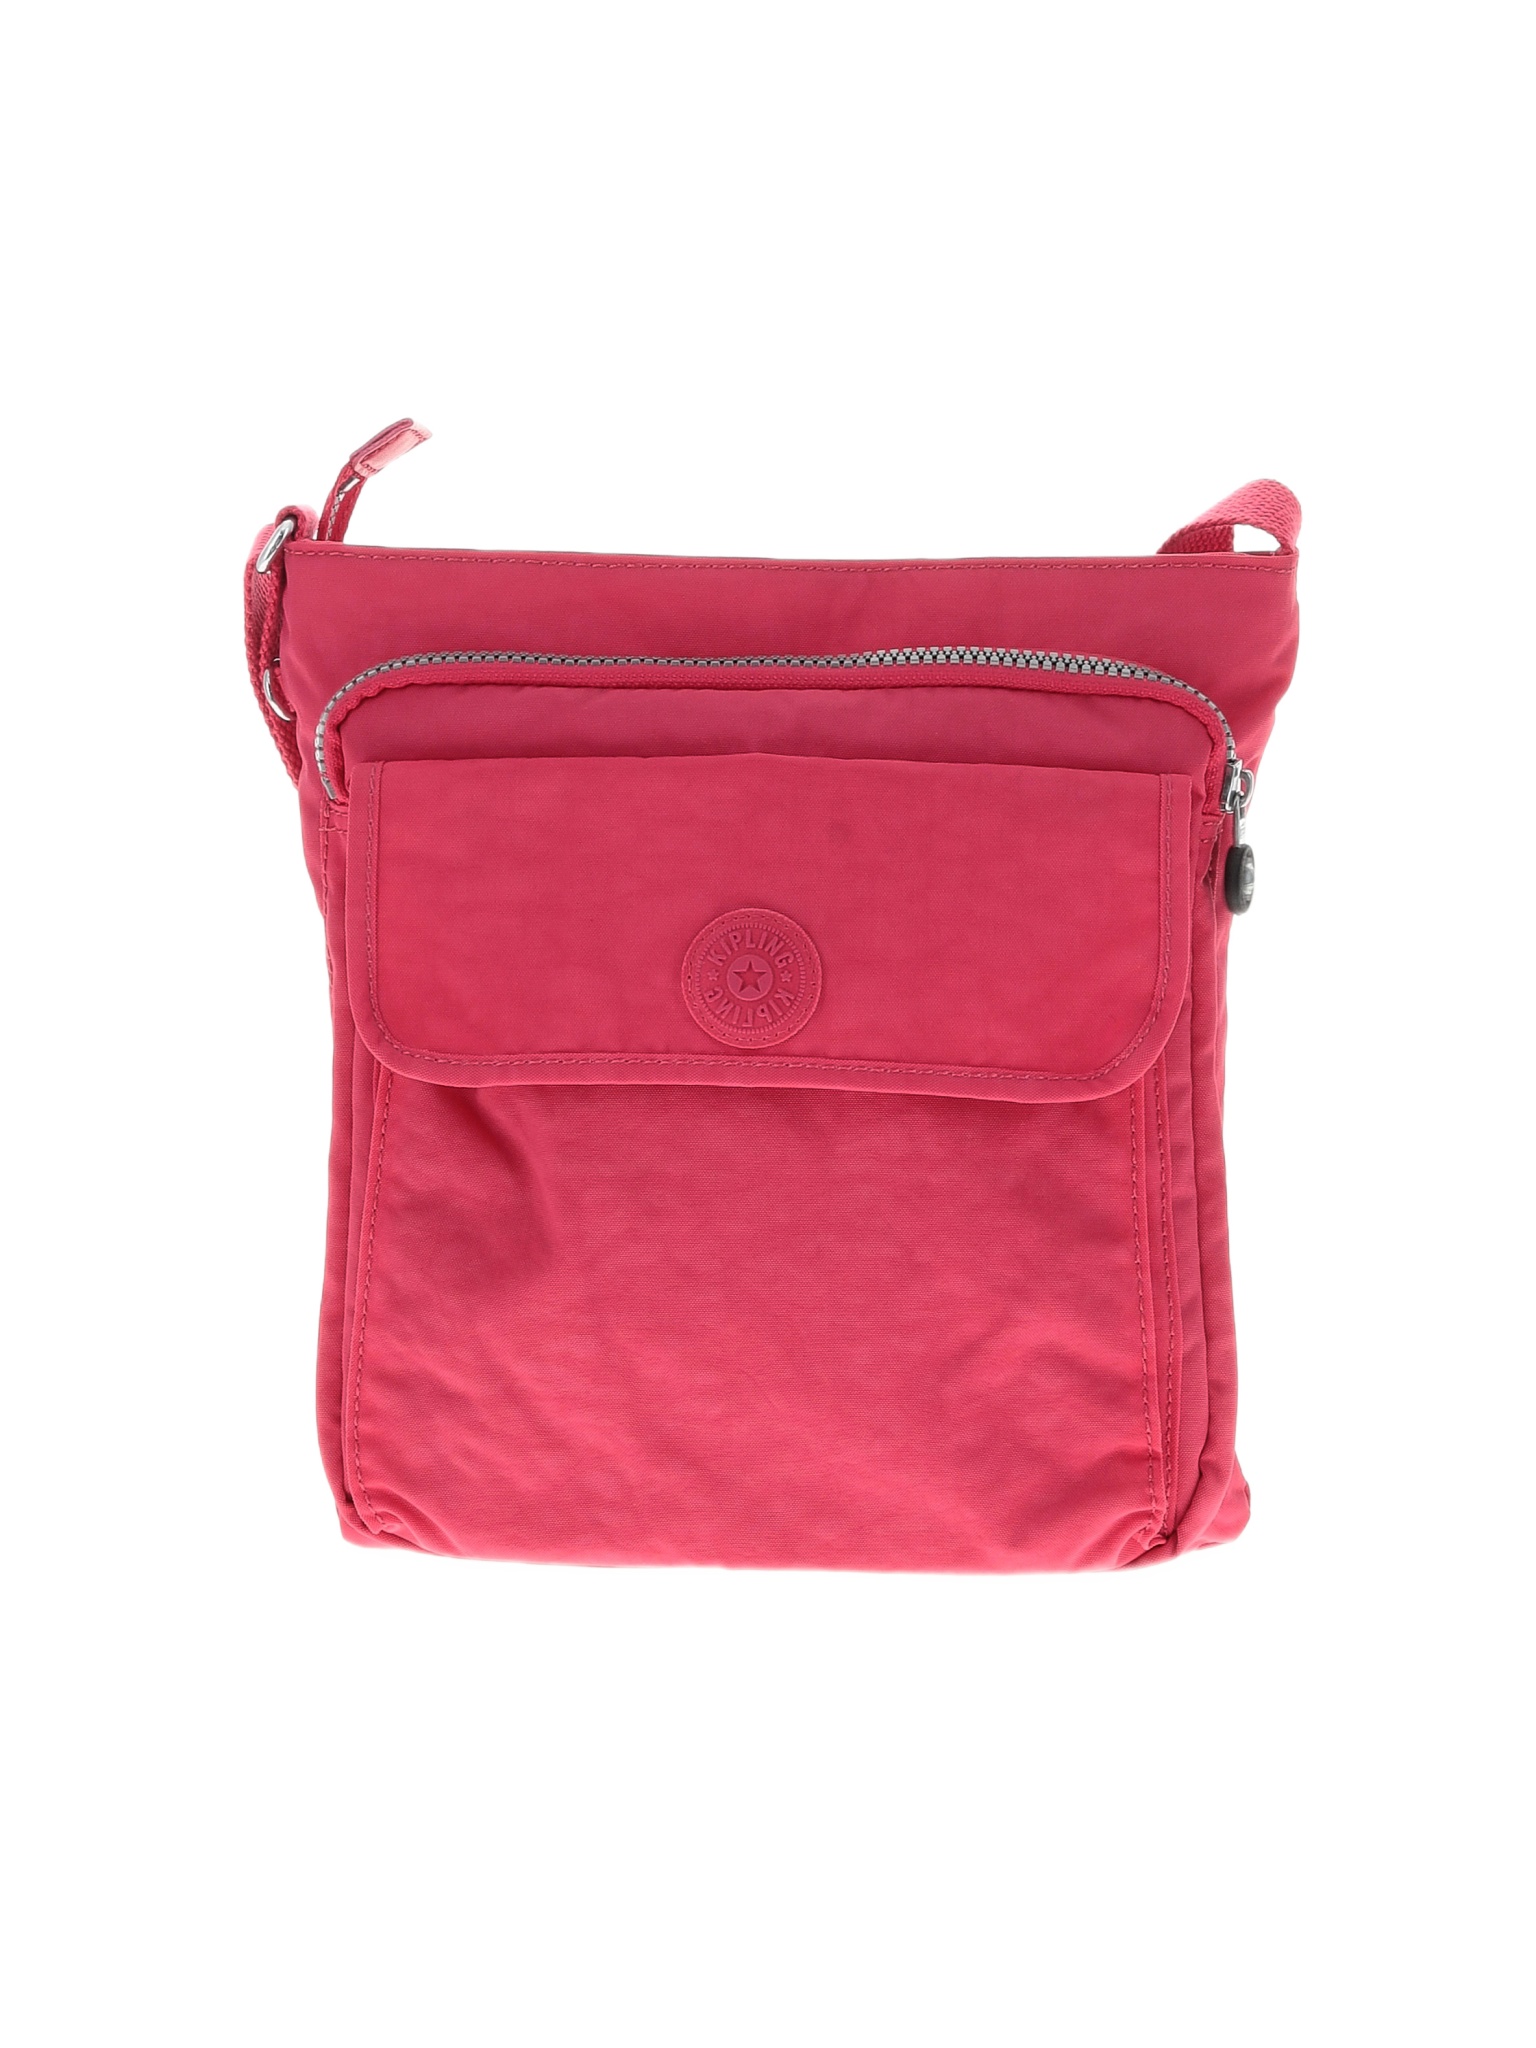 Kipling Solid Pink Crossbody Bag One Size - 62% off | thredUP